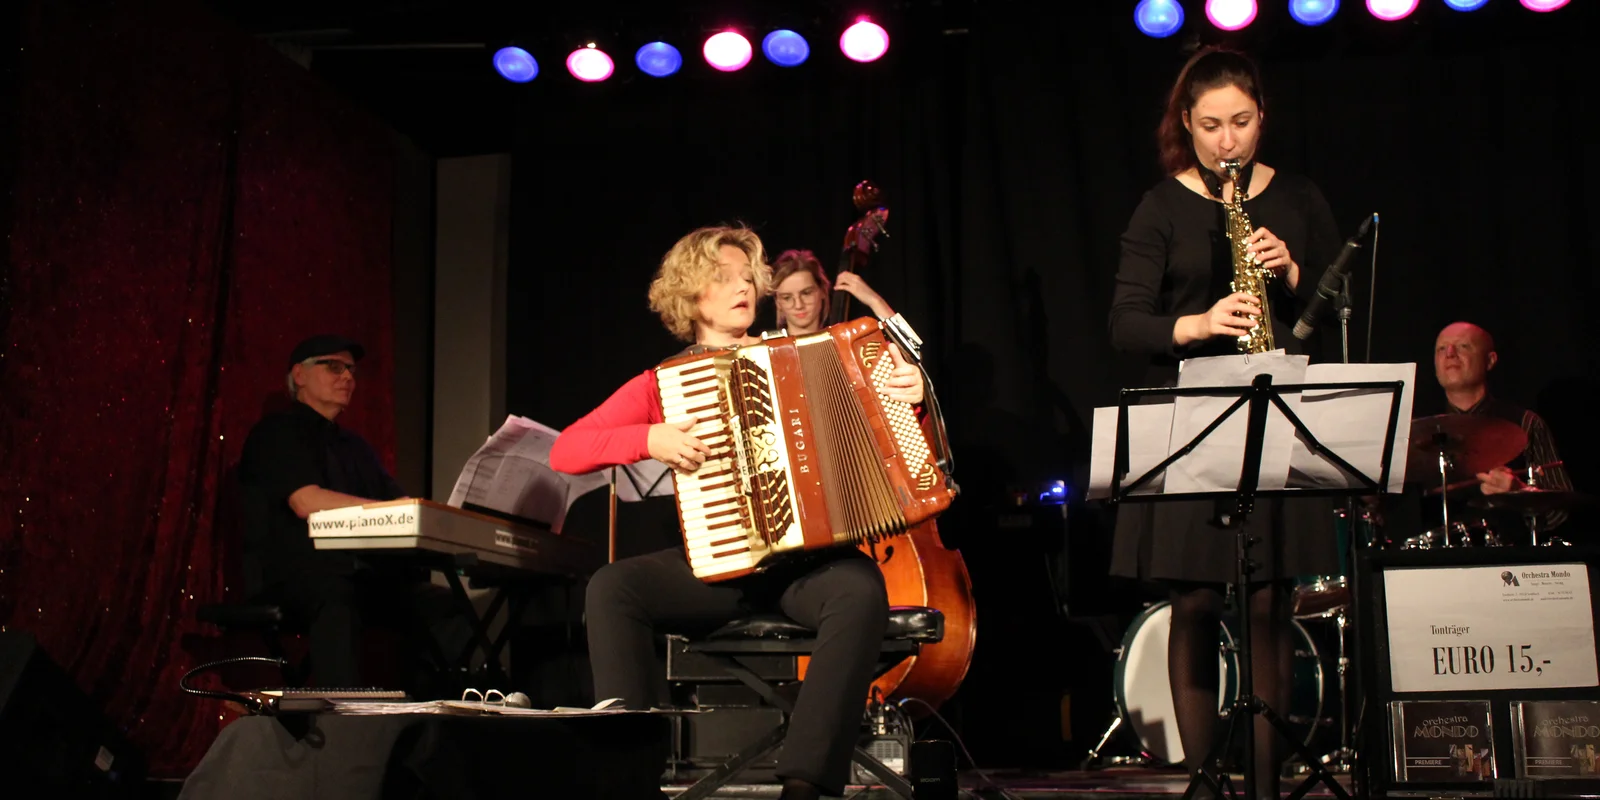 Eine blonde Frau mit rotem T-Shirt und schwarzer Hose sitzt auf einem Stuhl und spielt ein rotes Akkordeon. Im Hintergrund ist ein Pianist an einem elektrischen Keyboard, eine Contrabassspielerin, ein Schlagzeuger und neben ihr eine Saxophonspielerin